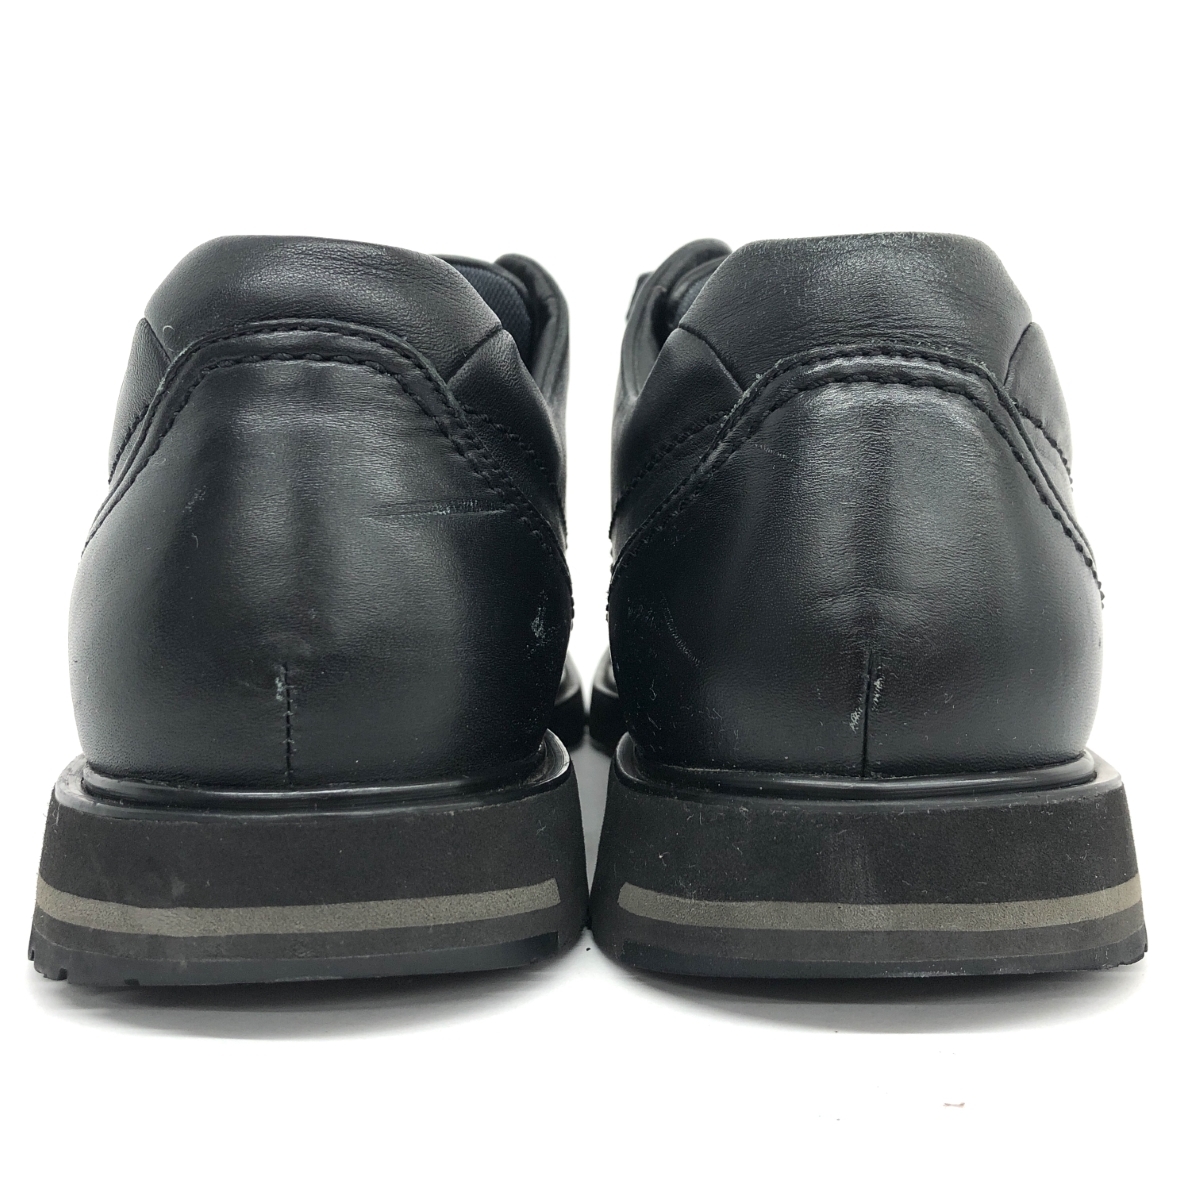 *pedalapedala Roo do обувь 25.5* черный мужской обувь обувь shoes кожа Asics ходьба 